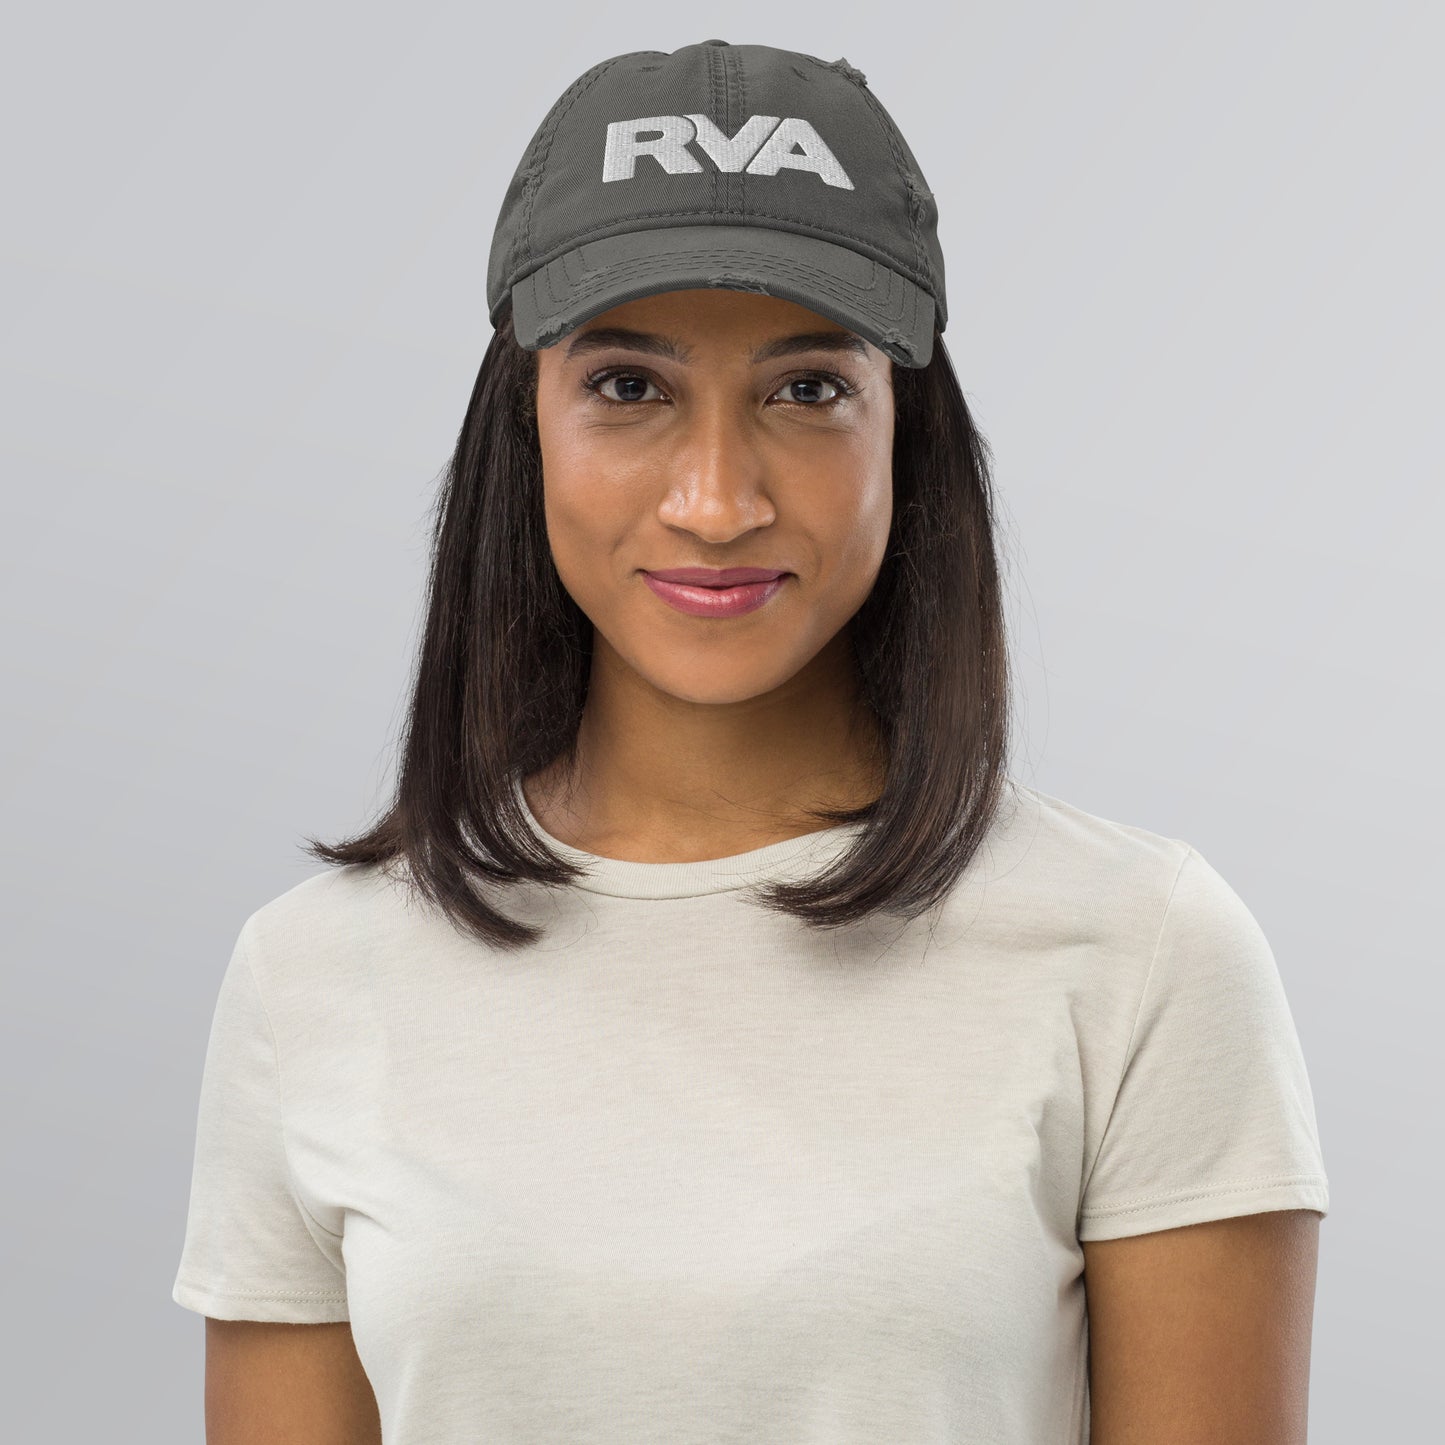 RVA / Richmond VA / Baseball Cap